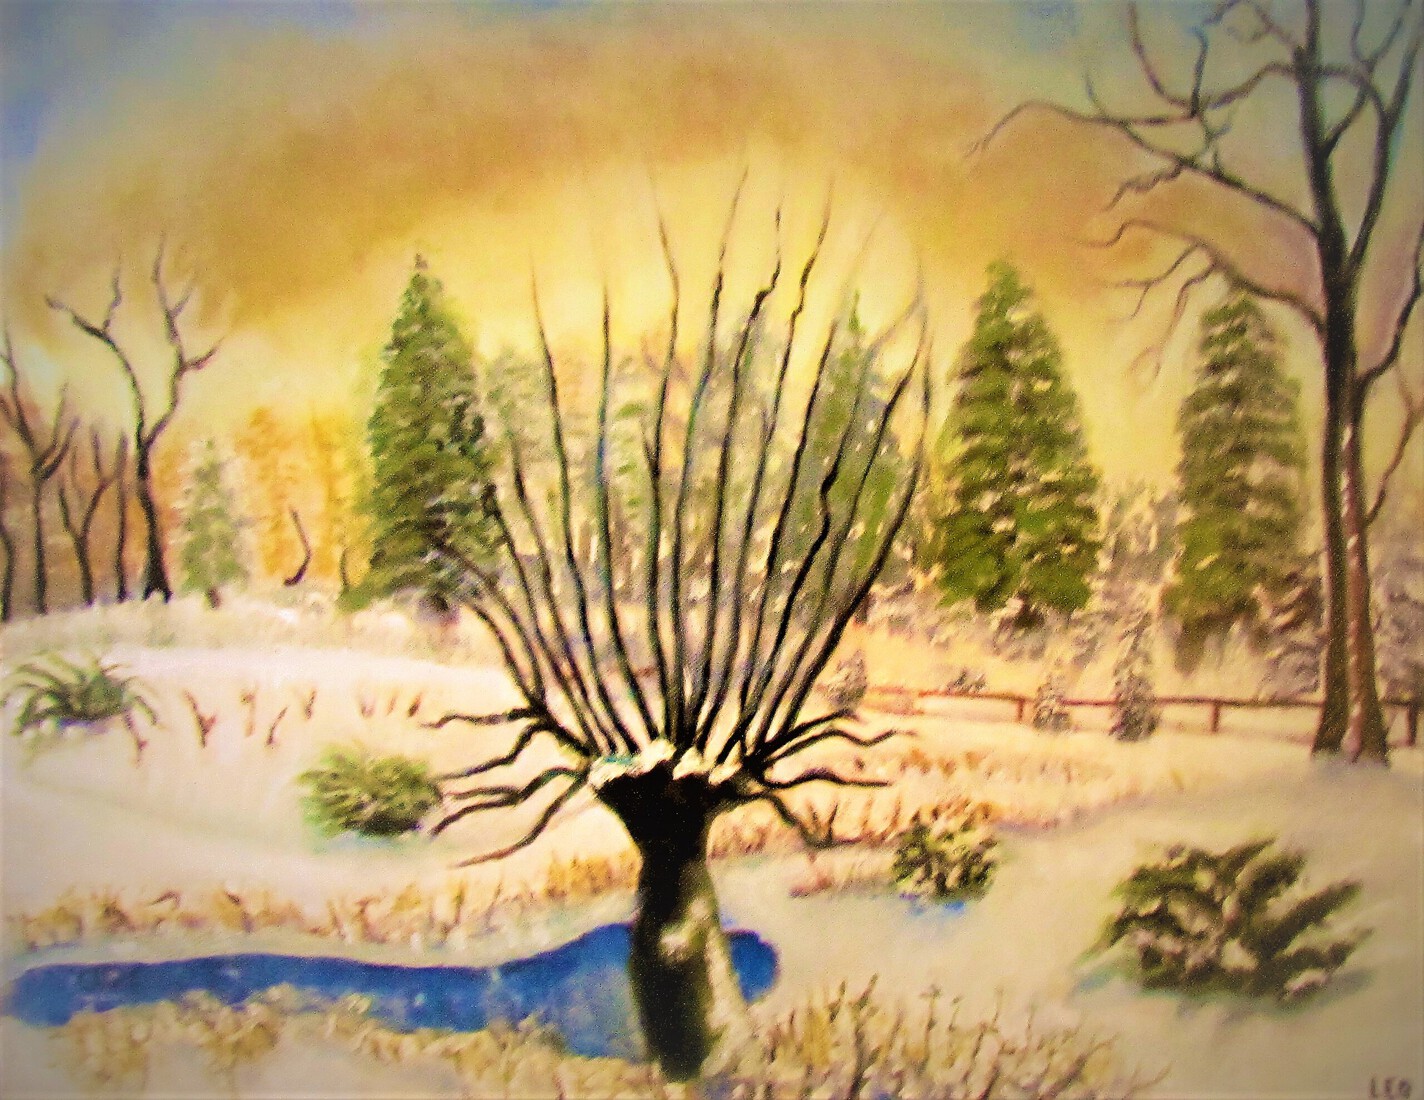 Arboretum in de winter